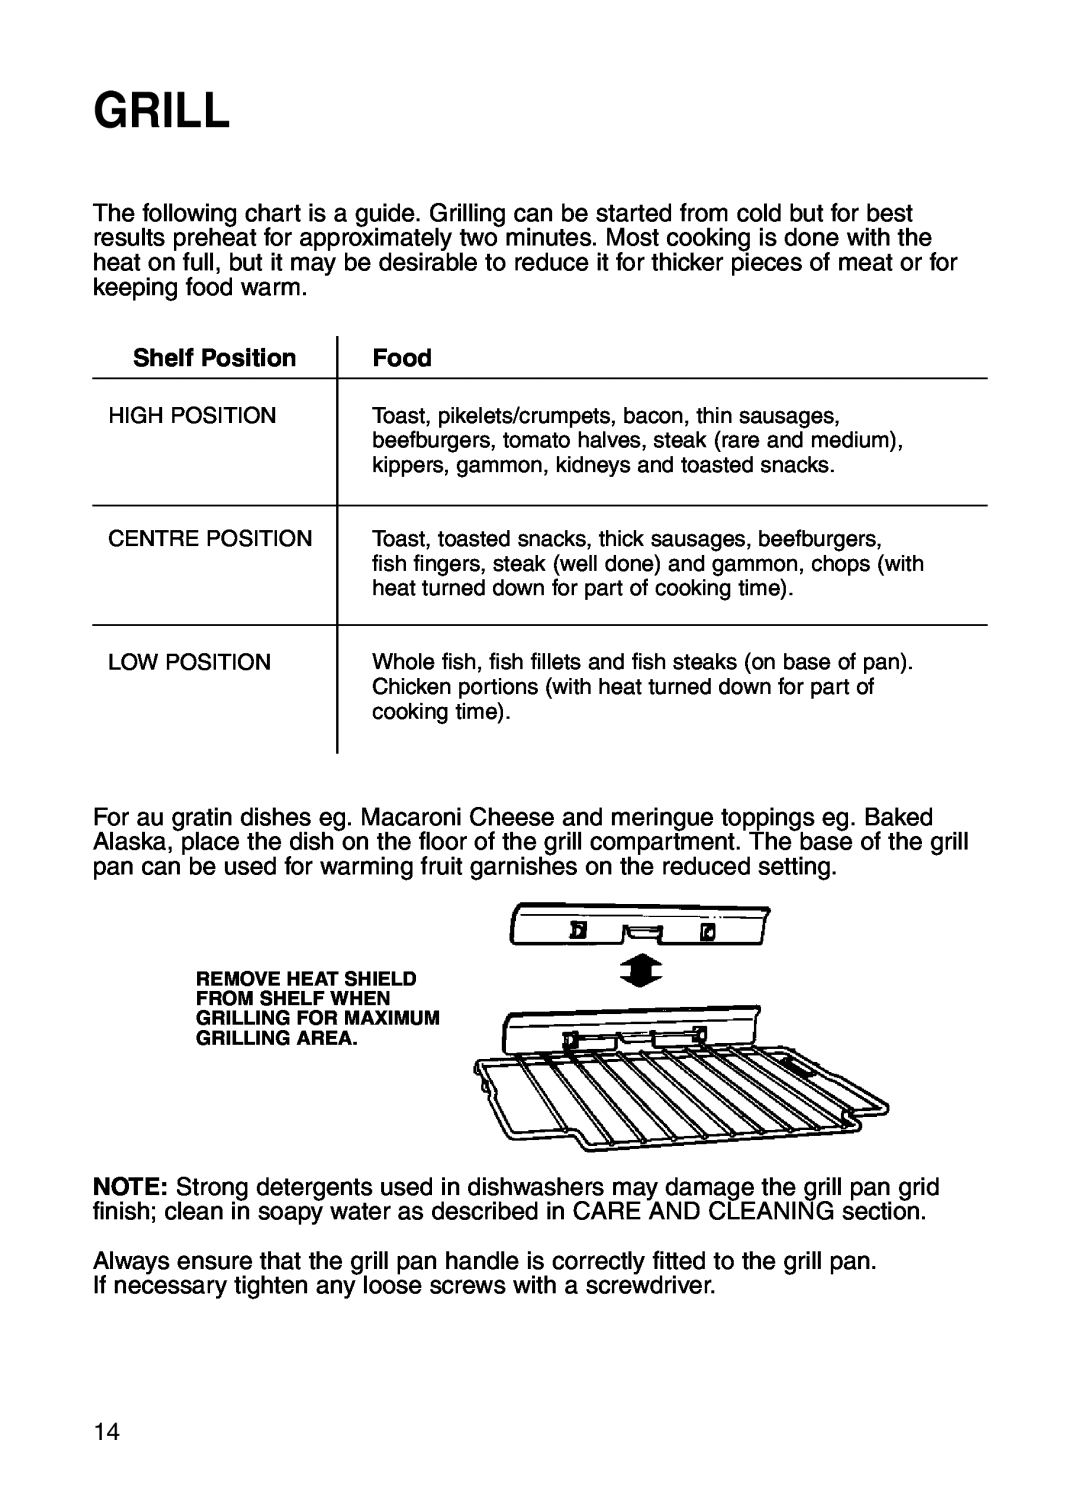 Hotpoint GW81 manual Grill, Shelf Position, Food 